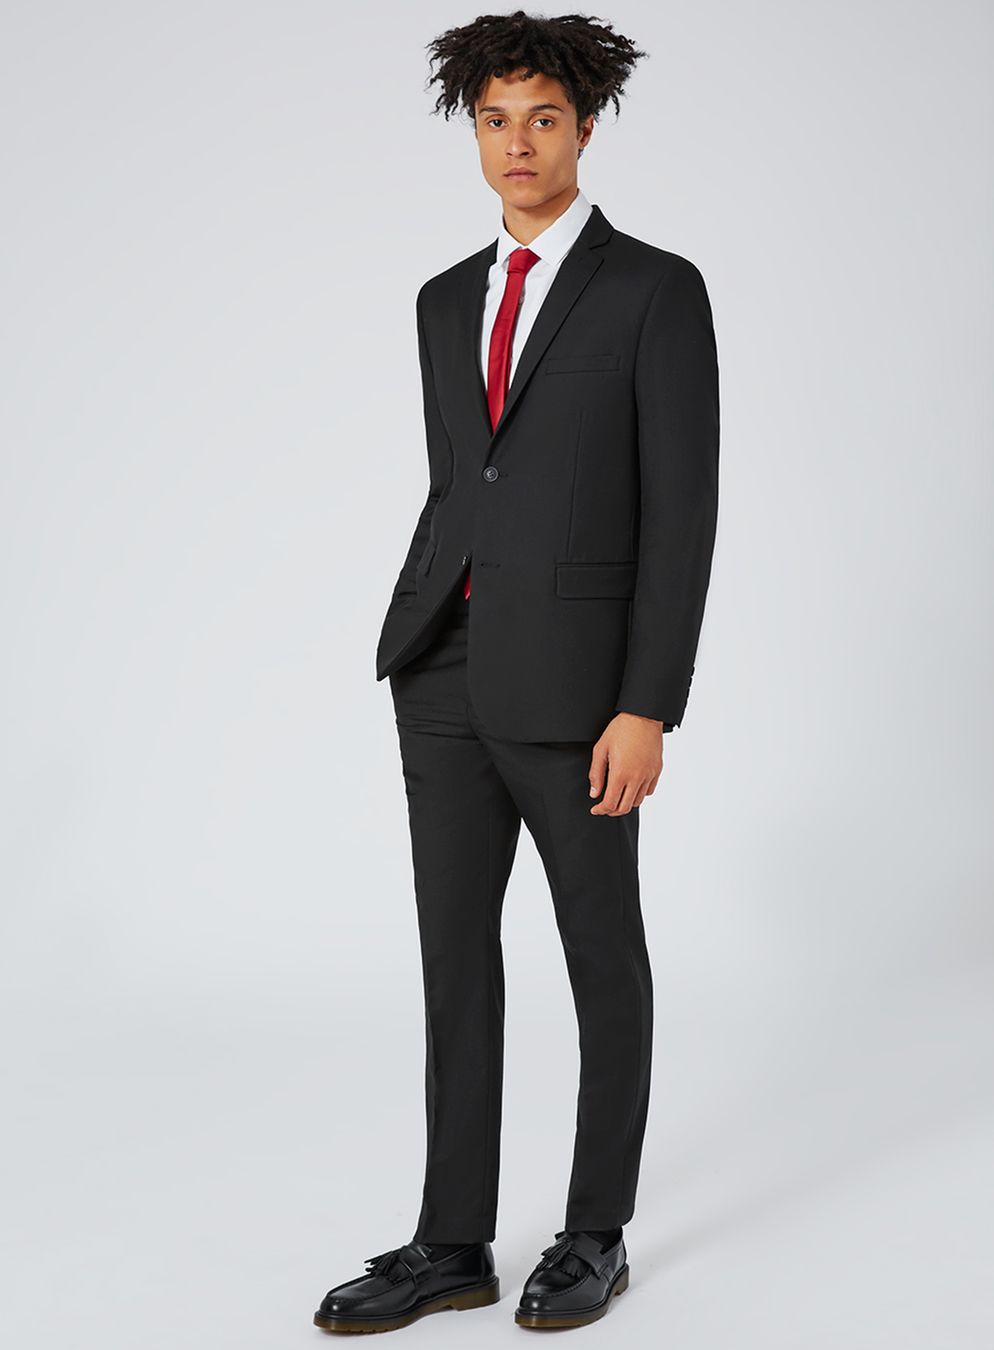 black slim fit suit jacket - topman usa caonfwe